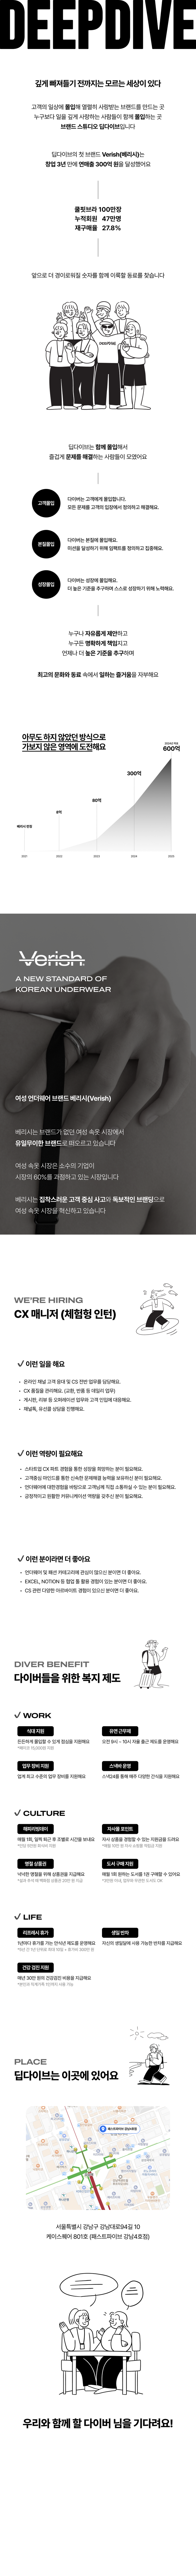 [딥다이브] CX 매니저(체험형 인턴, 6개월)